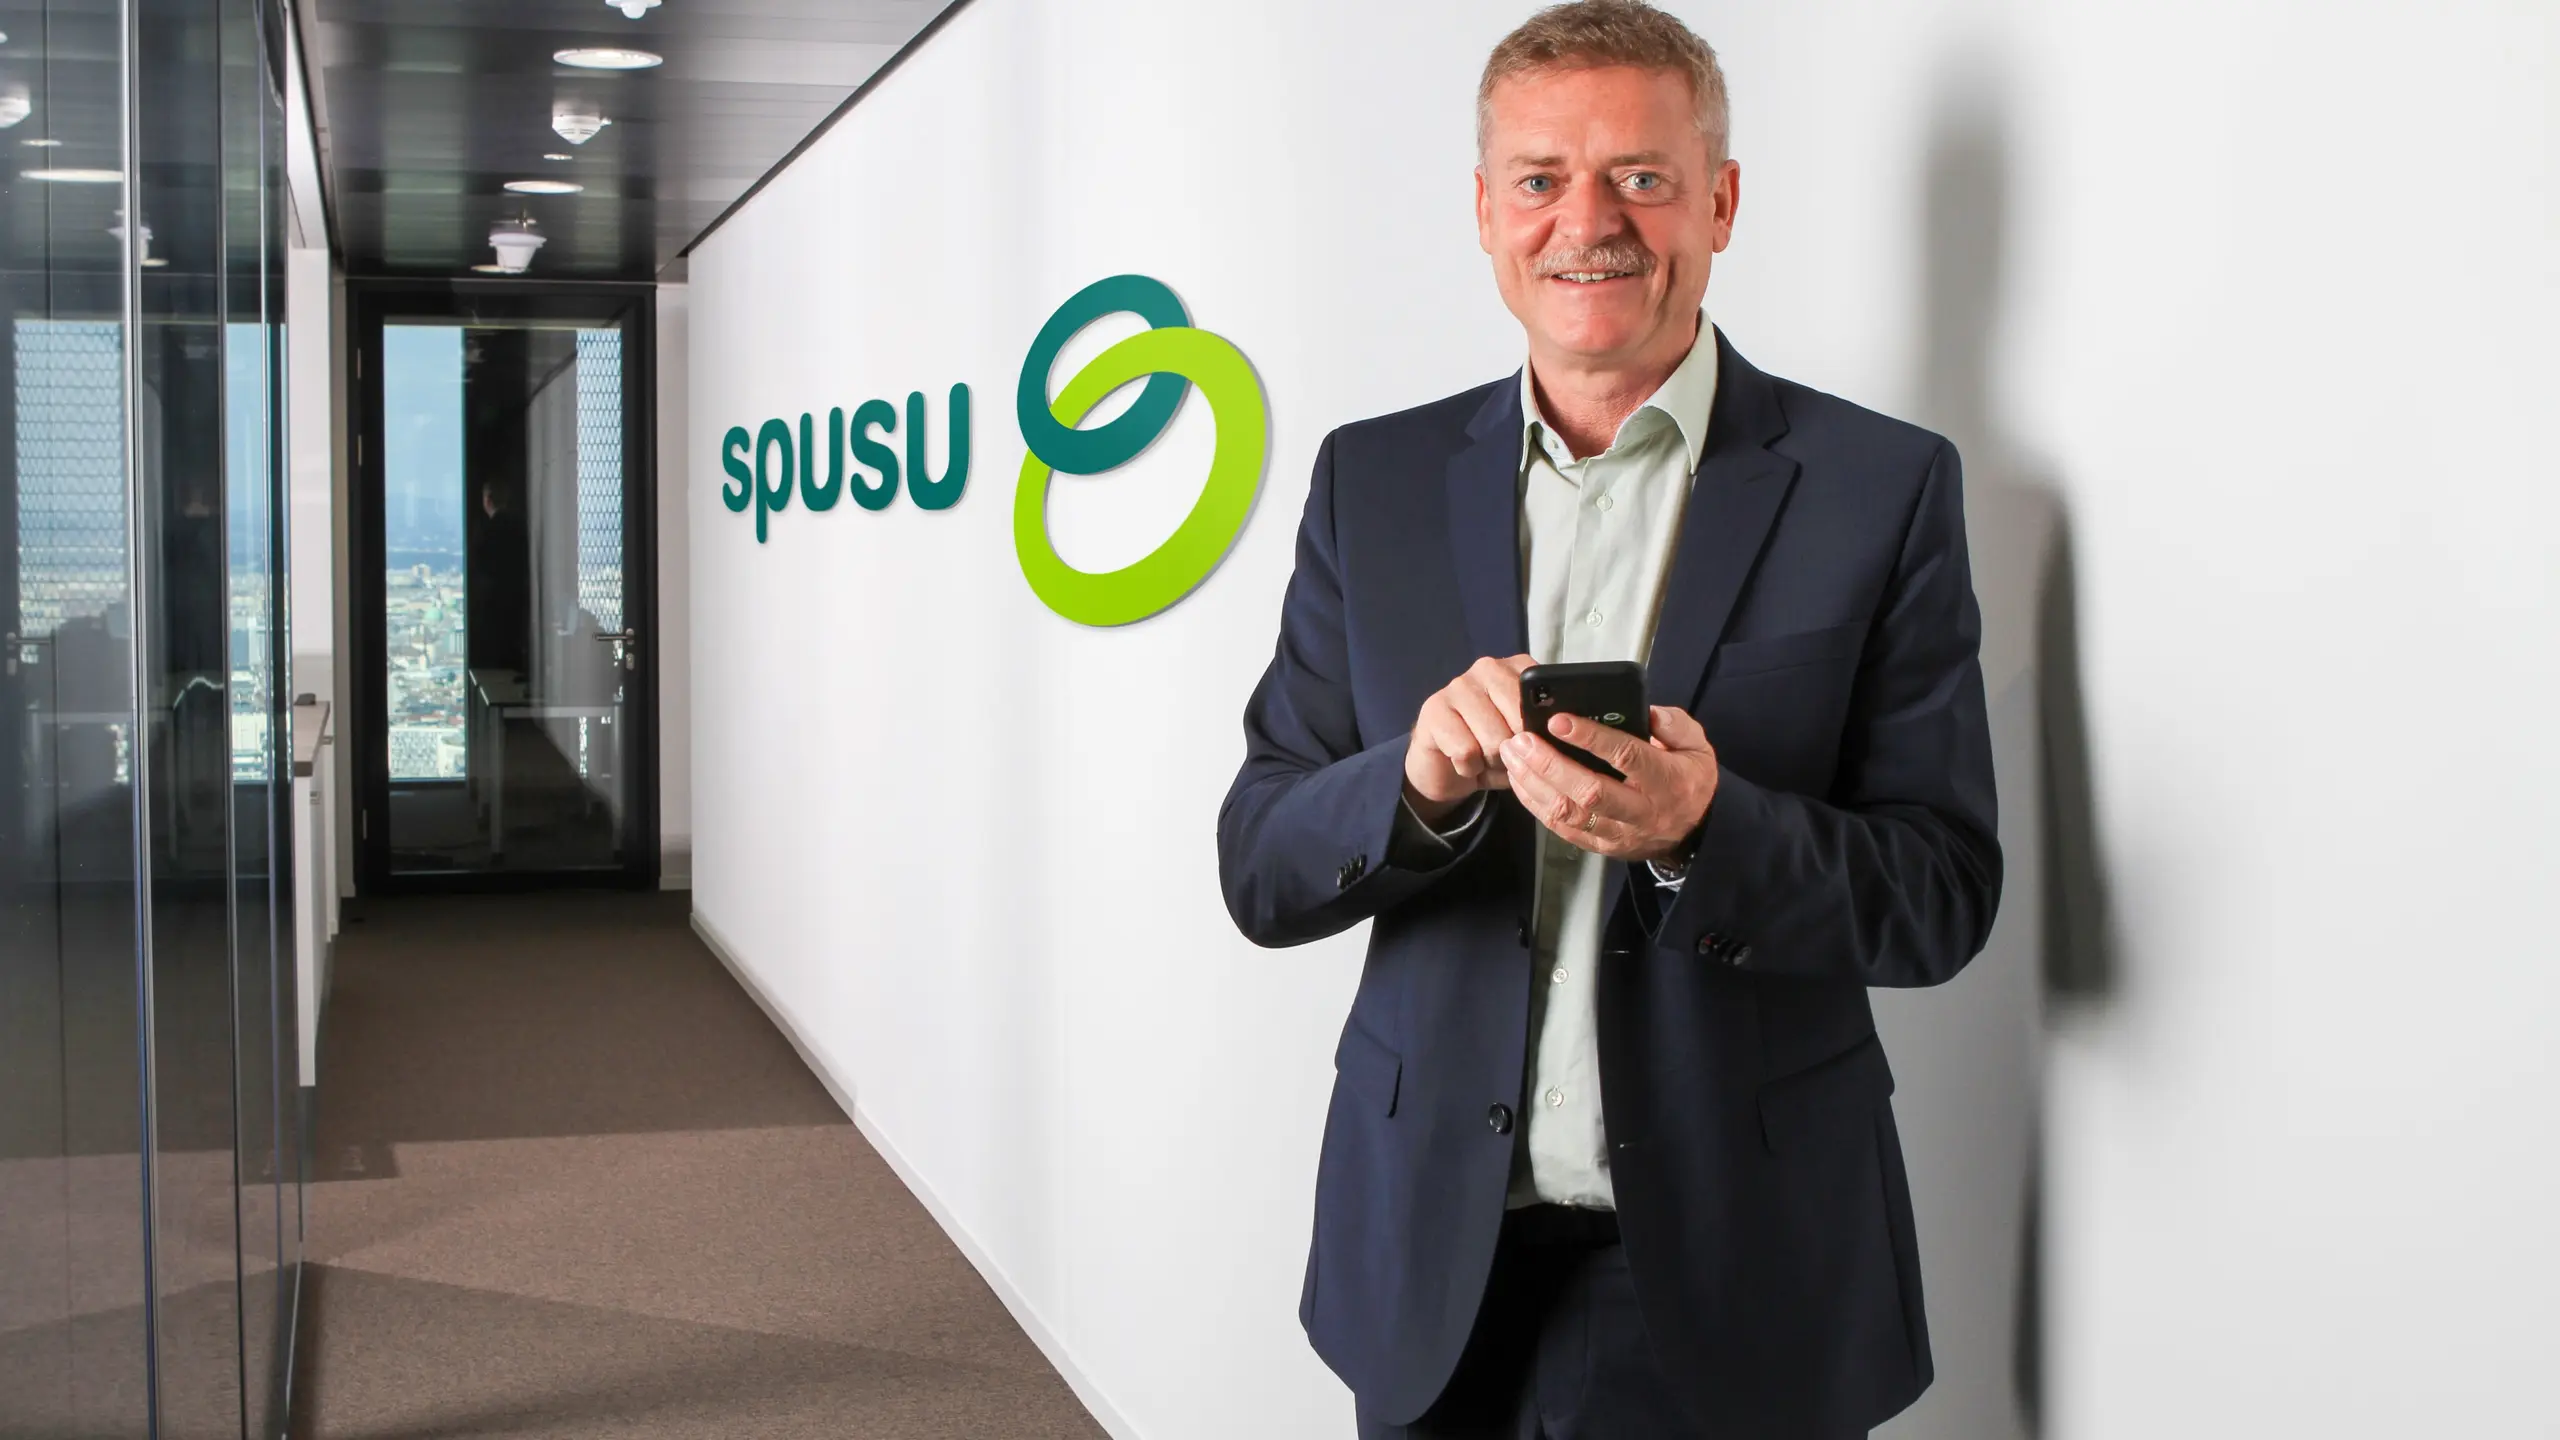 Franz Pichler, Geschäftsführer und 100% Eigentümer von spusu / Mass Response Service GmbH